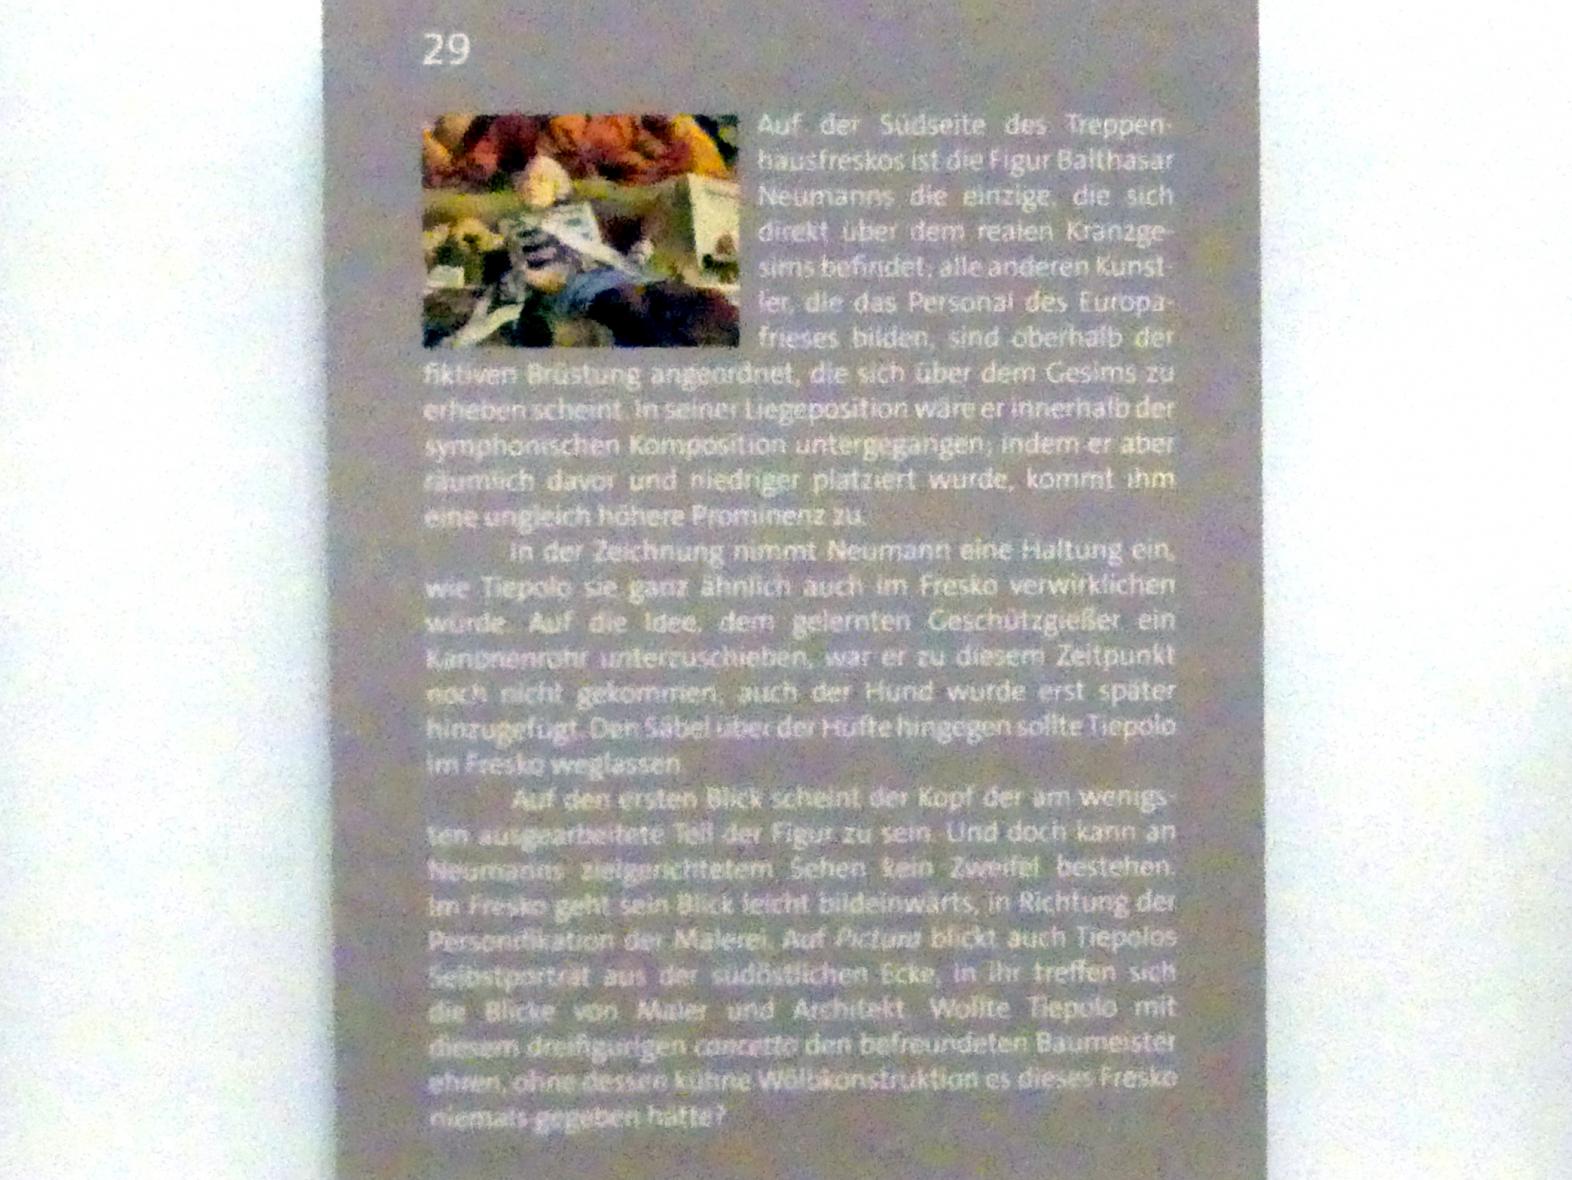 Giovanni Battista Tiepolo (1715–1785), Liegefigur von Balthasar Neumann im Europafries (Faksimile), Würzburg, Martin von Wagner Museum, Ausstellung "Tiepolo und seine Zeit in Würzburg" vom 31.10.2020-15.07.2021, Saal 2, 1752, Bild 4/4